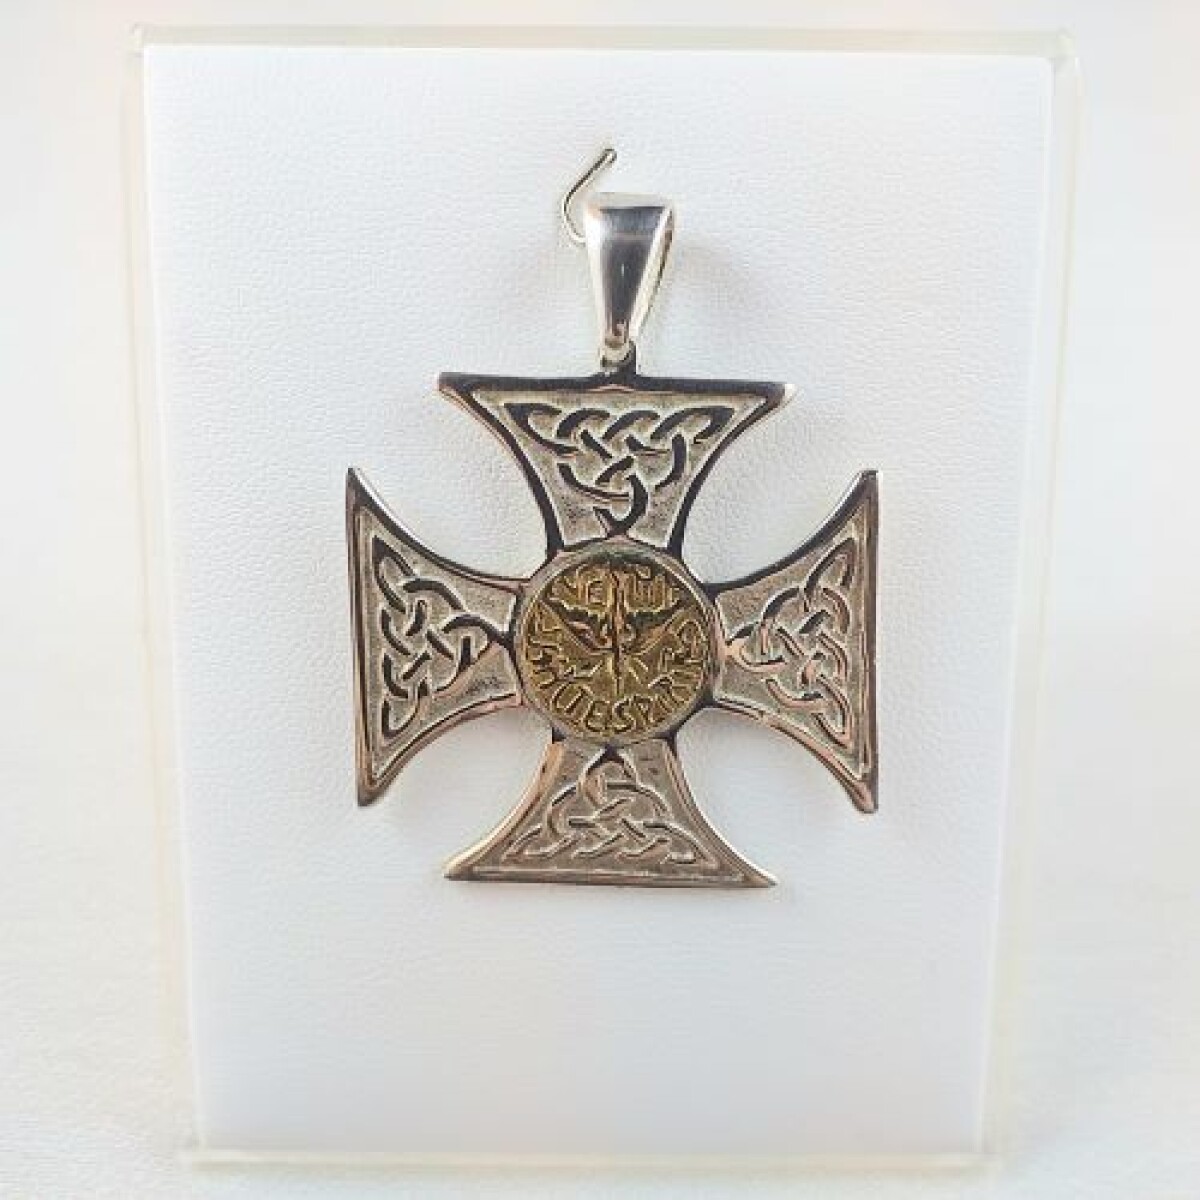 Cruz de plata 925 con imagen central del Espíritu Santo en double de oro 18 Ktes. Medidas: 3.9 cm * 3.9 cm, espesor 2 mm. 